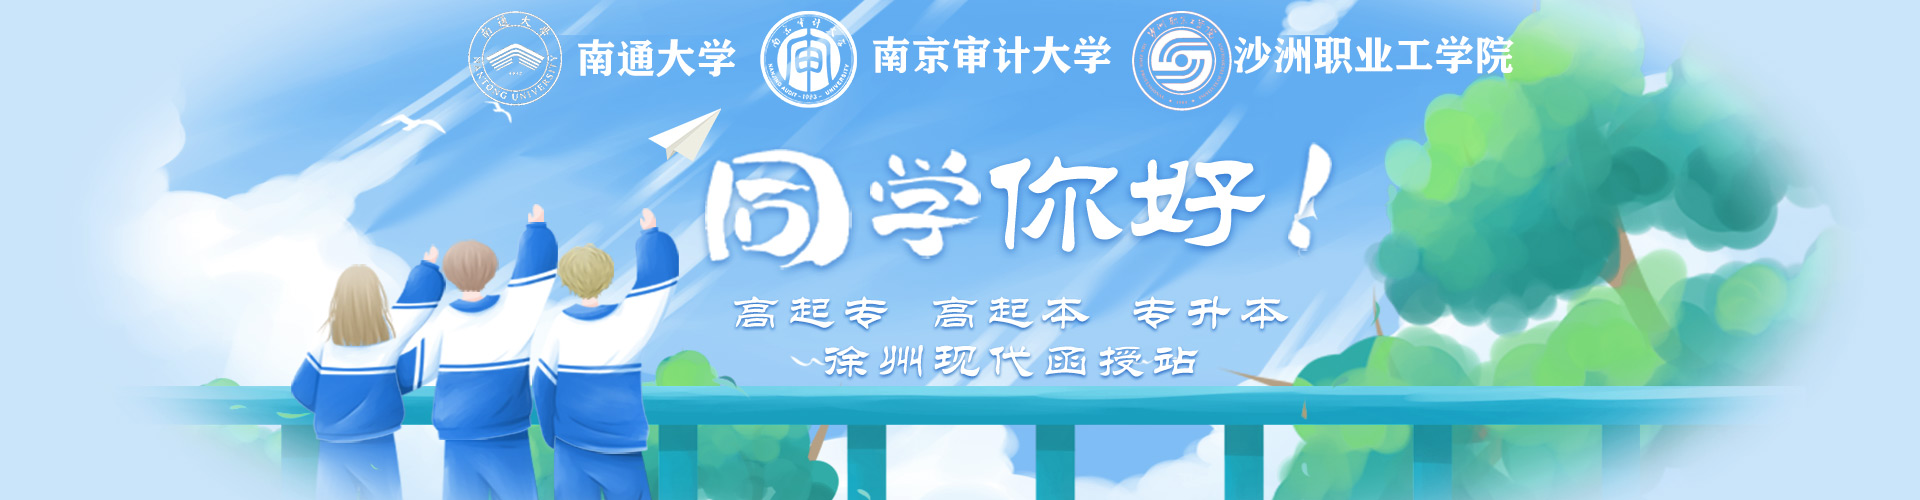 学历教育banner